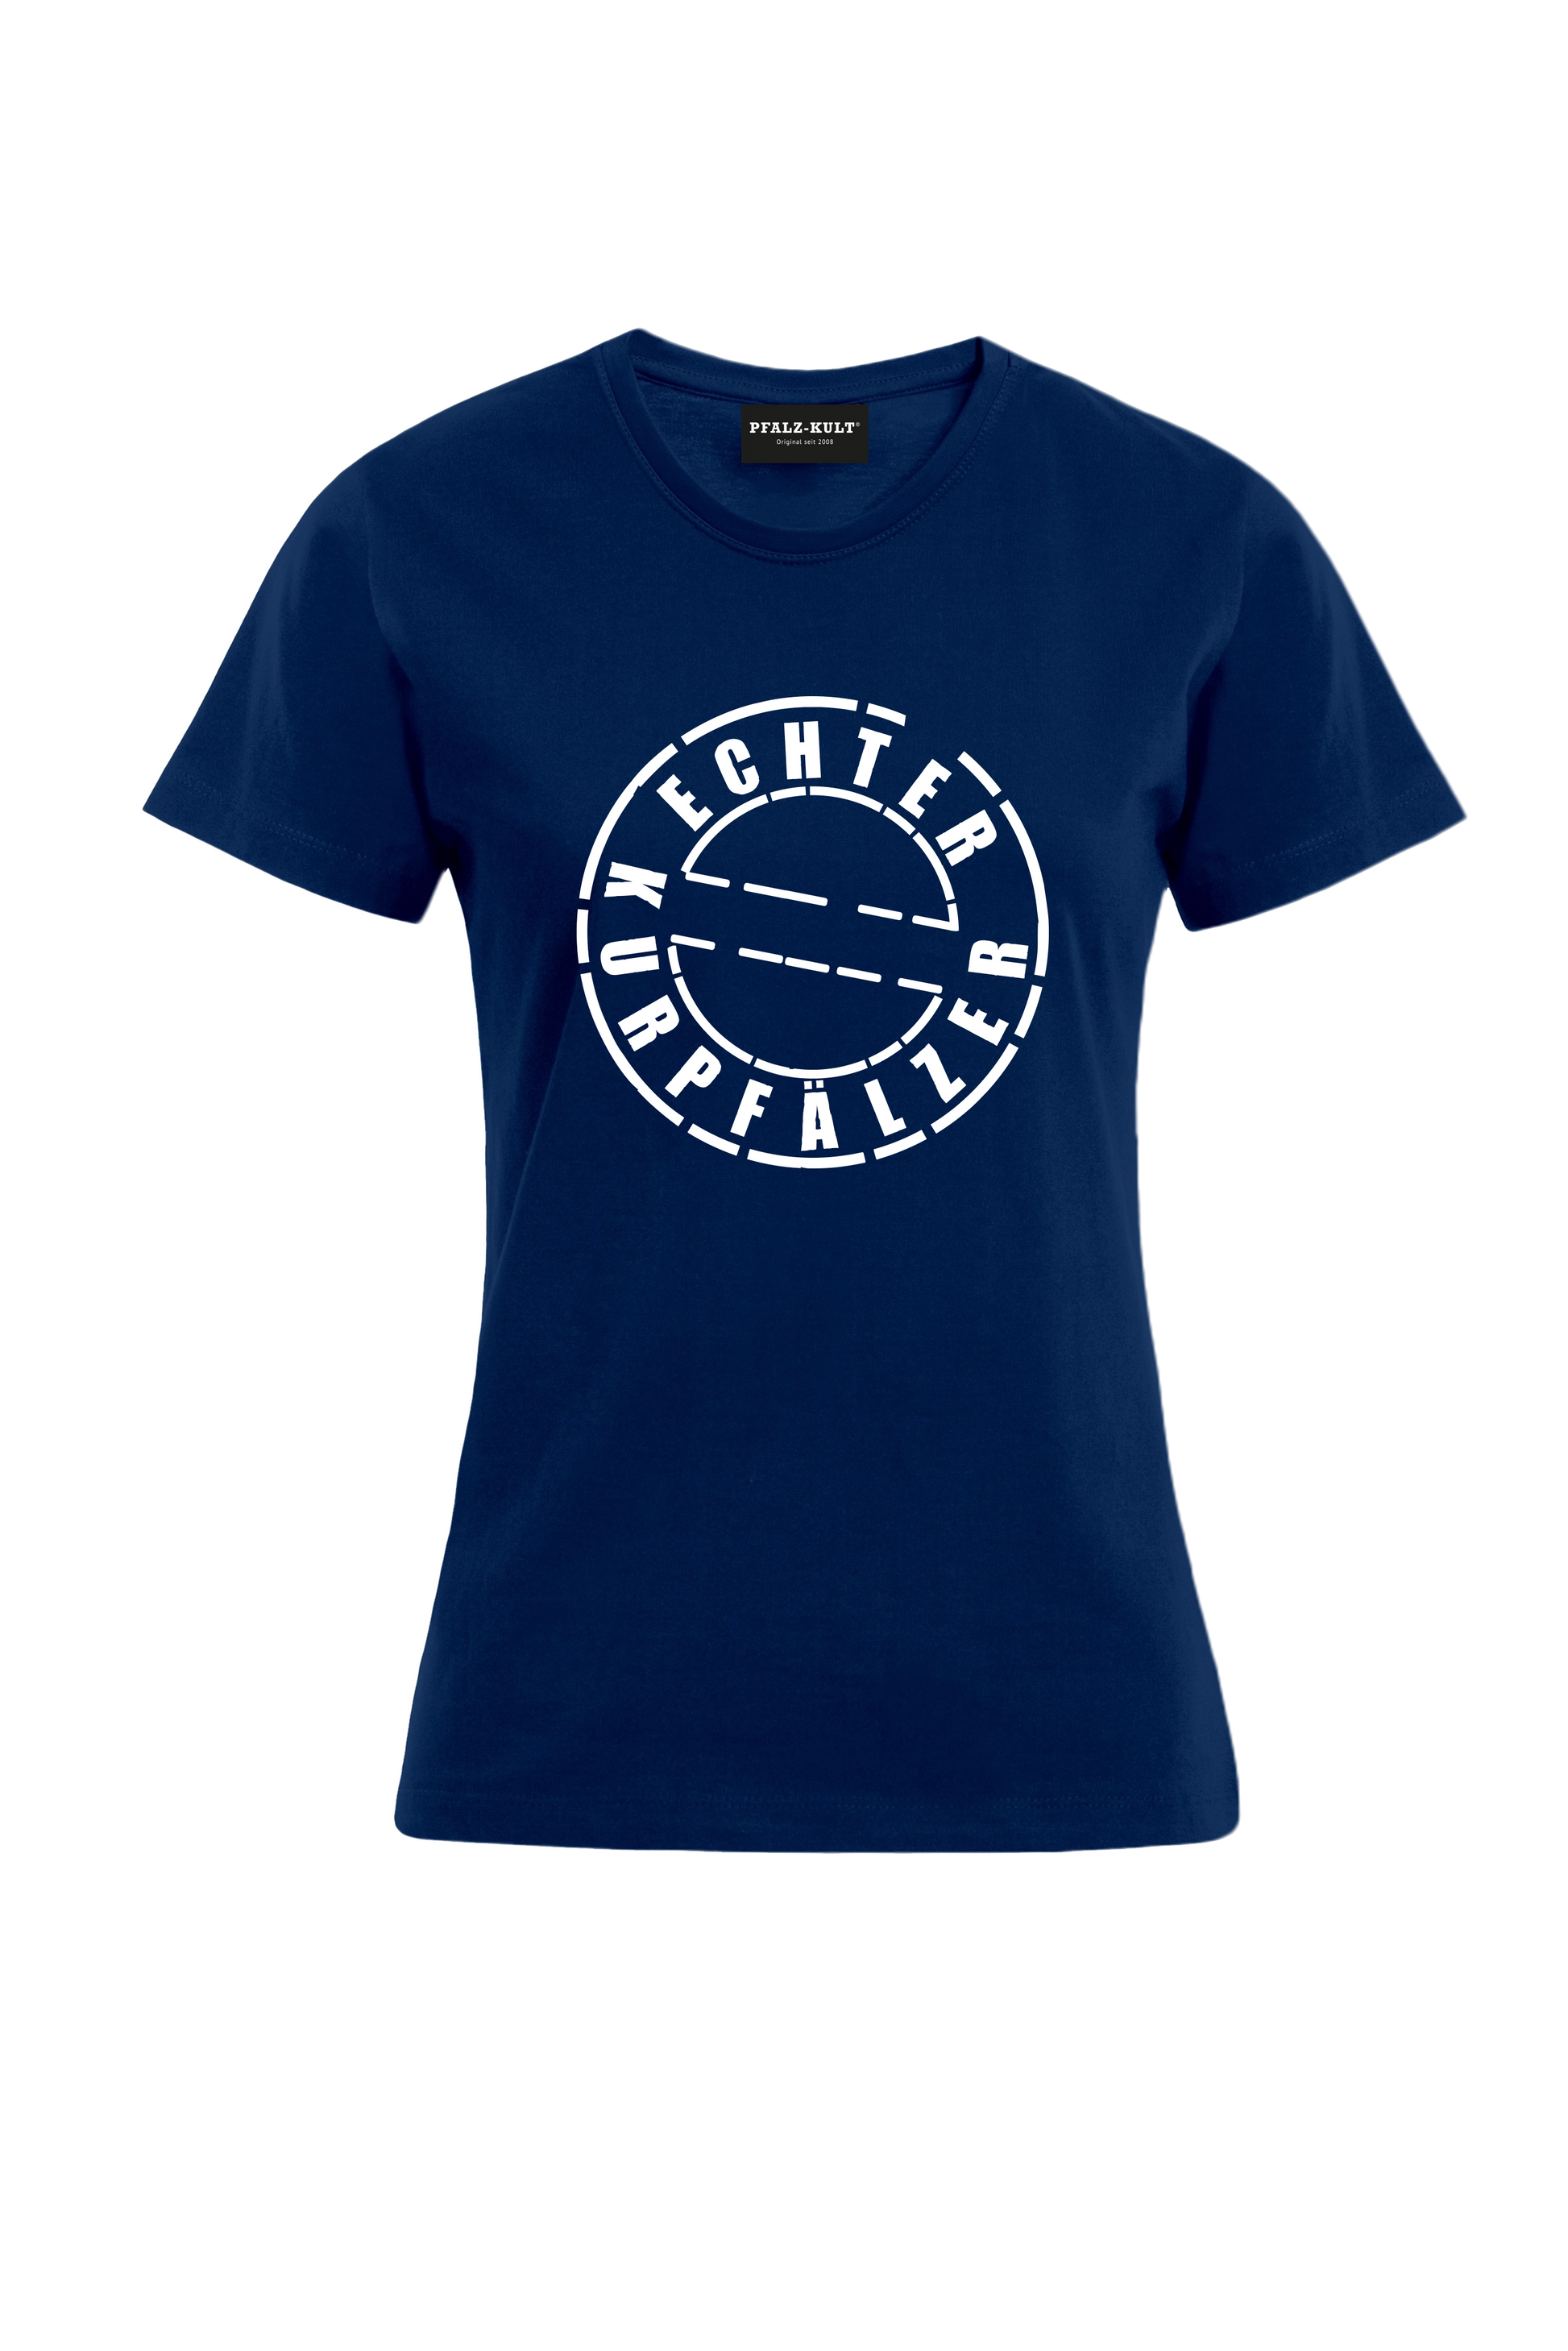 Dunkelblaues Damen T-Shirt mit dem Aufdruck "Echter Kurpfälzer" von Pfalz-Kult. Trendige Mode aus der Pfalz für Pälzr.